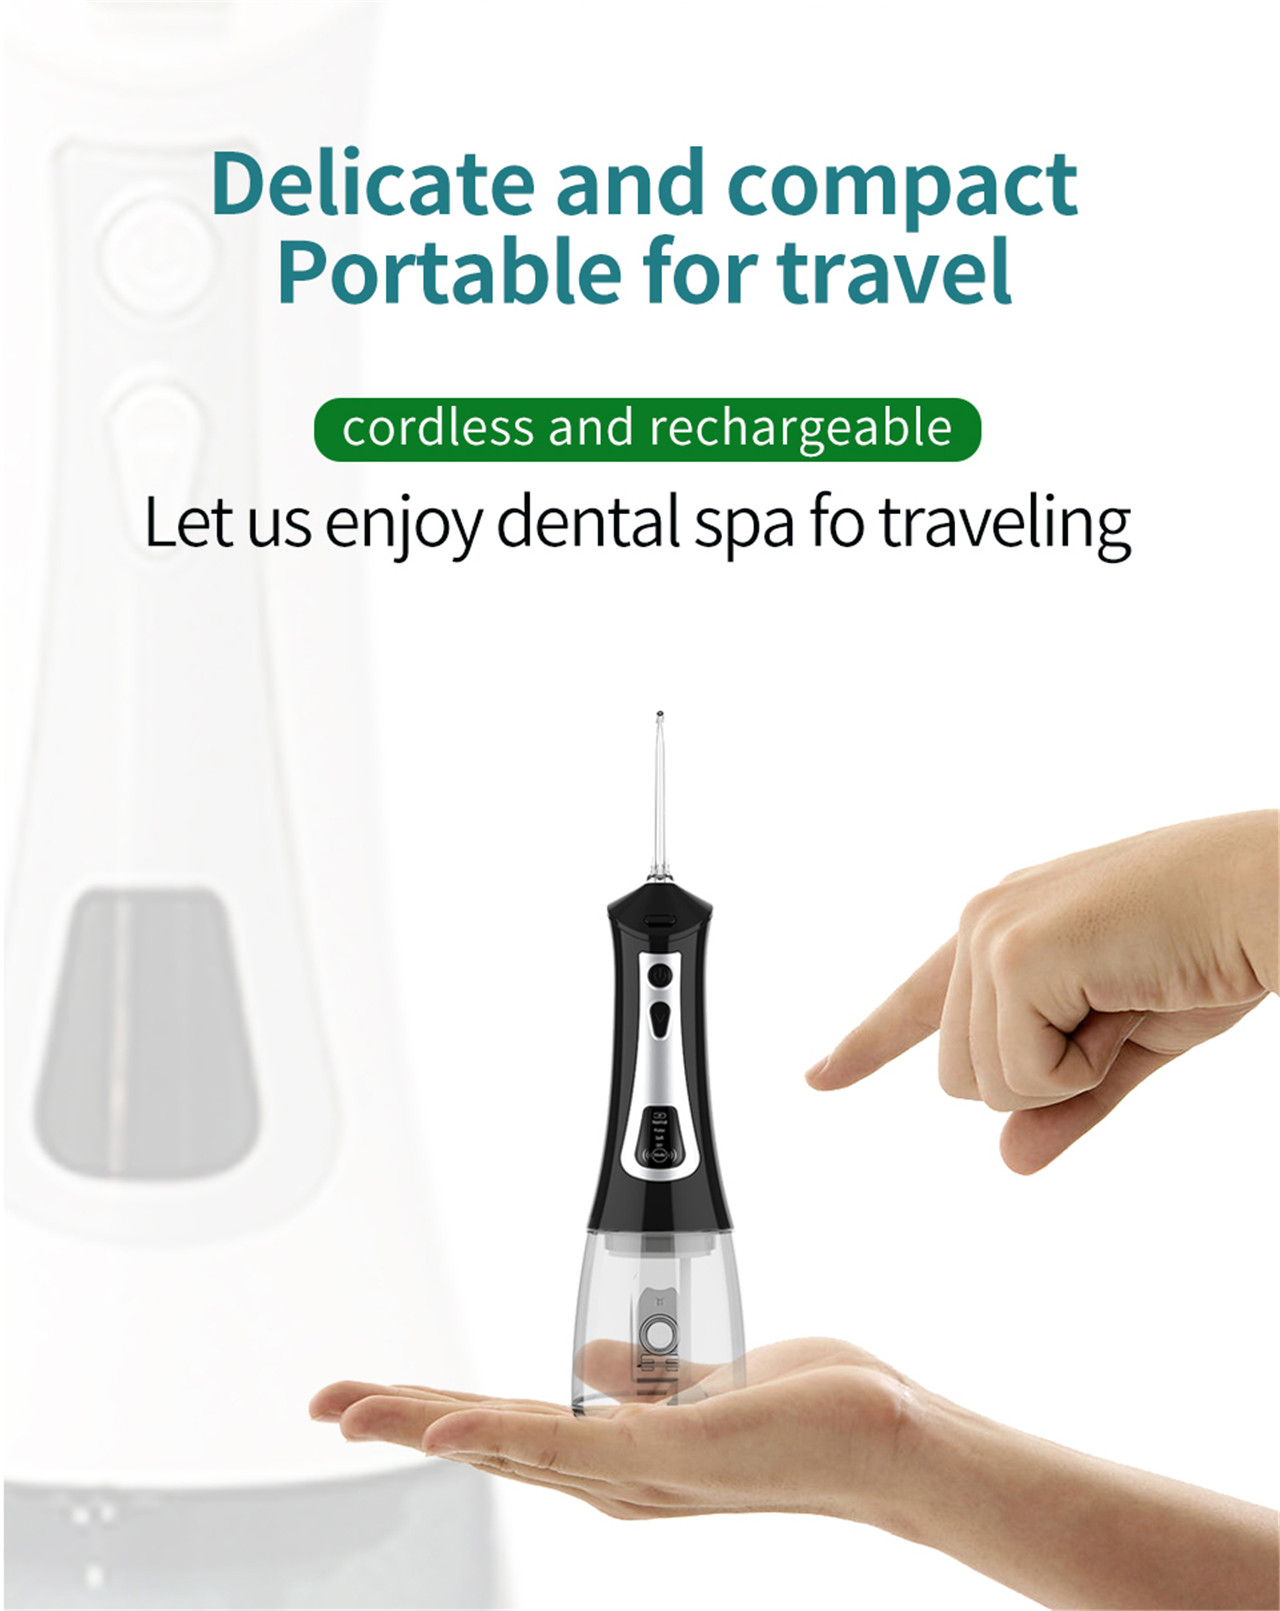 LCD display omedic water flosser para sa dental clean oral spa (12)